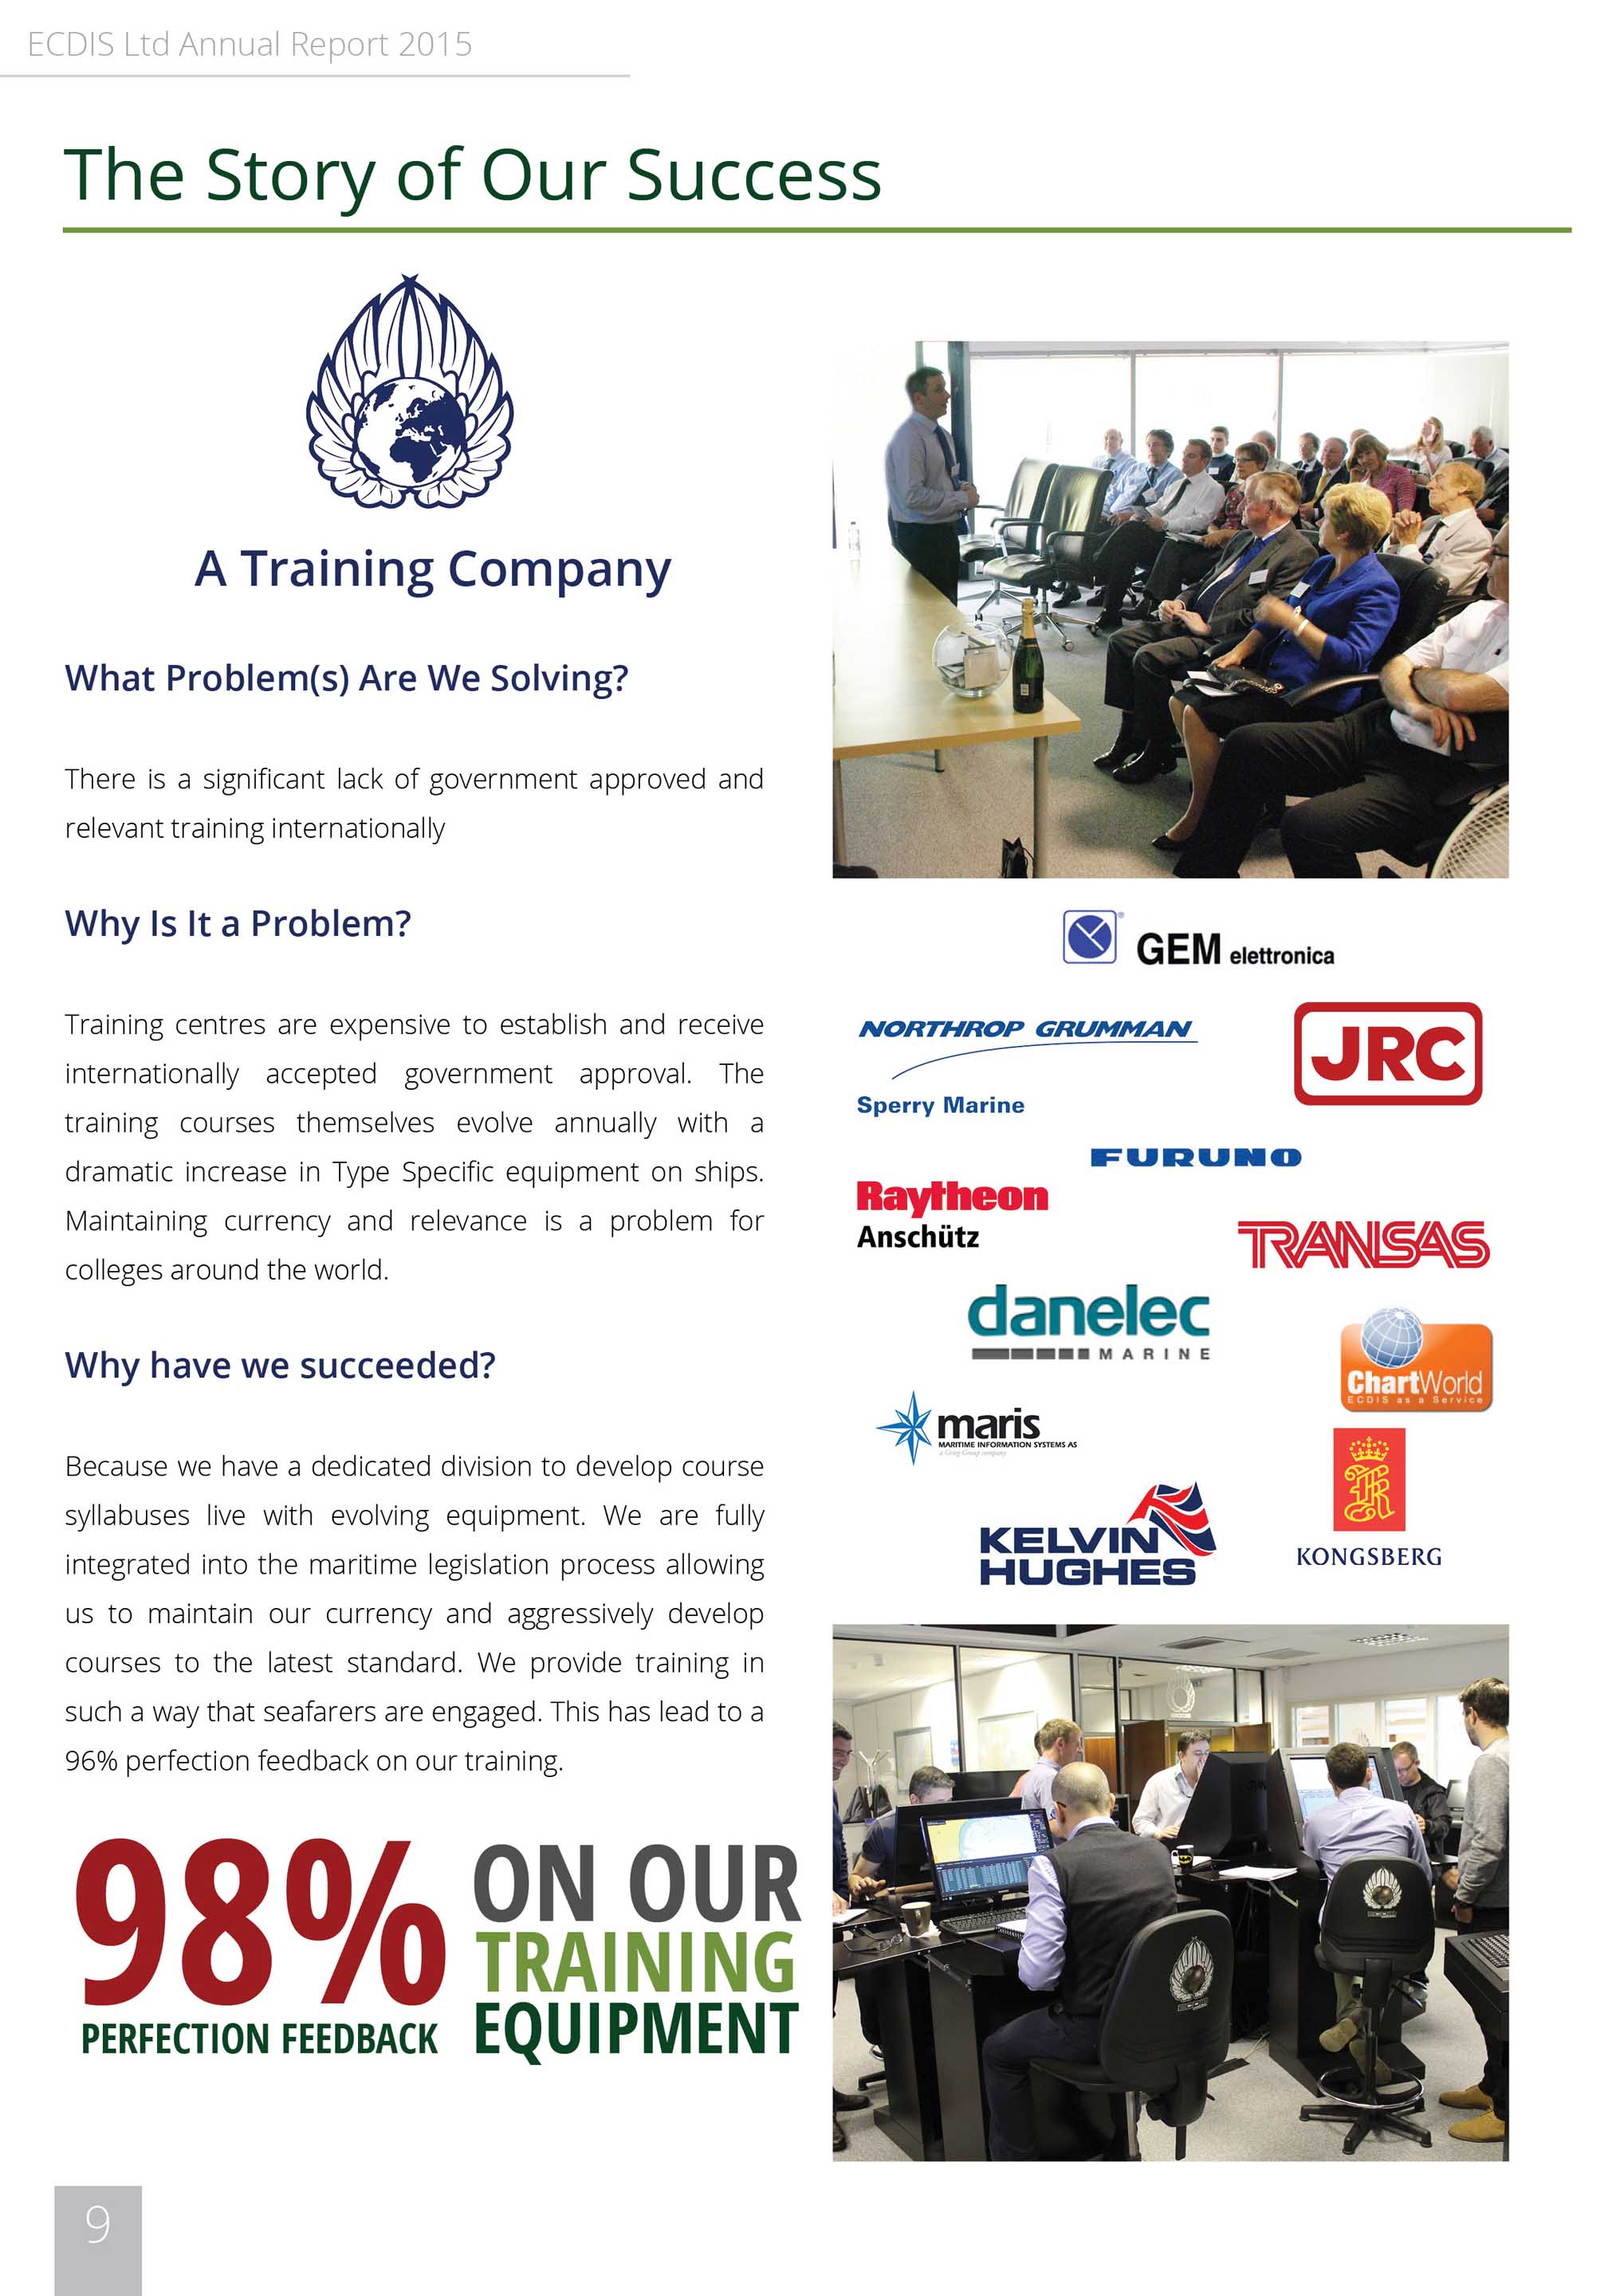 ECDIS-LTD-ANNUAL-REPORT (10) – ECDIS Training Courses and